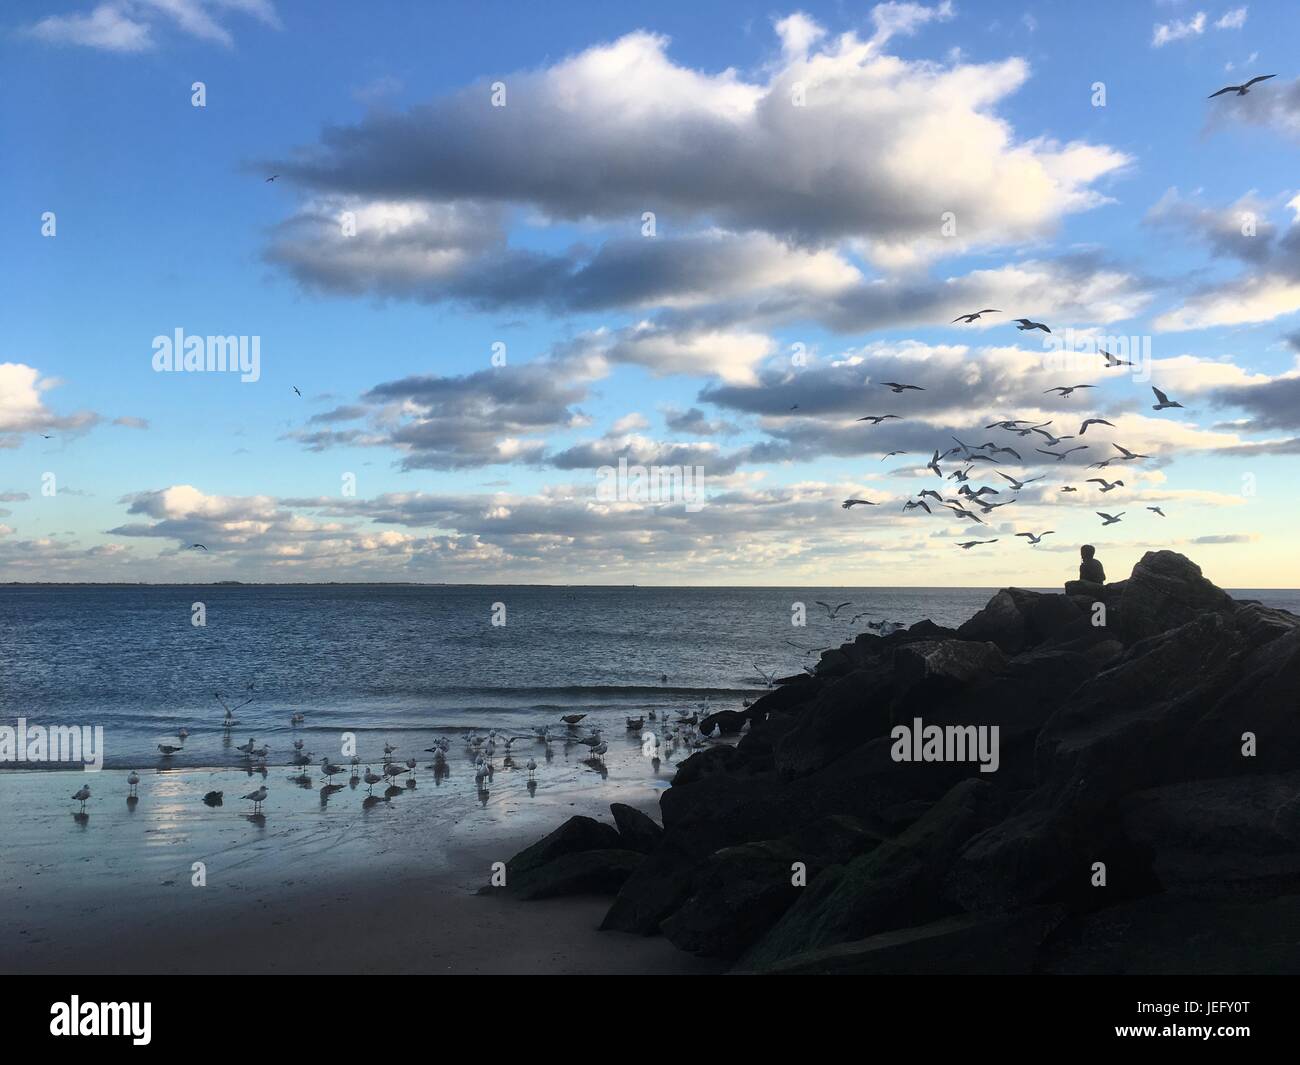 Il giovane si siede su rocce e alimenta gabbiani sulla spiaggia. Silhouette di gabbiani volanti alla ricerca di cibo, Coney Island, Brooklyn, New York. Oceano calmo Foto Stock